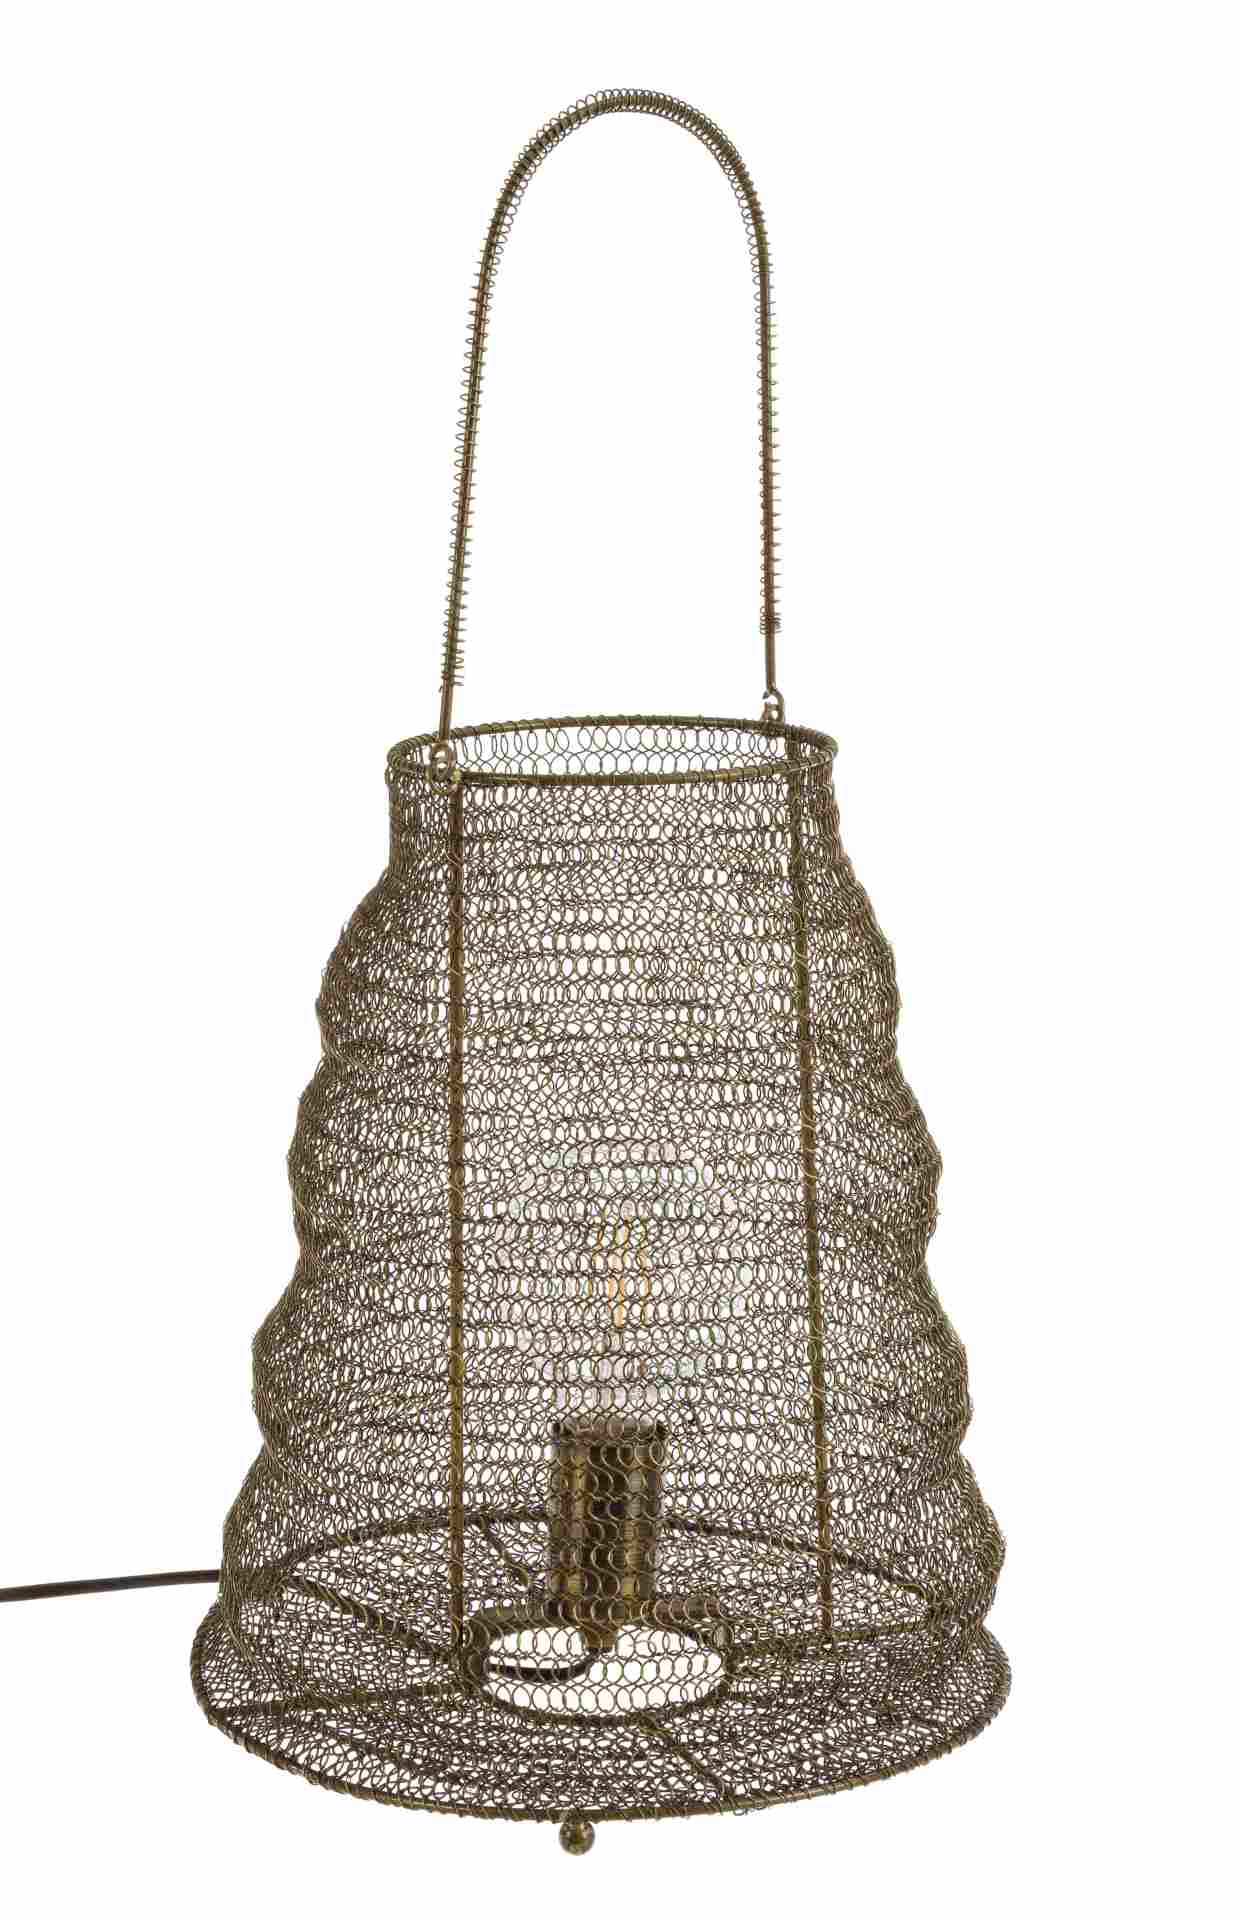 Die Tischleuchte Amish überzeugt mit ihrem klassischen Design. Gefertigt wurde sie aus Metall, welches einen Messing Farbton besitzt.Die Lampe hat eine Lichtquelle. Die Lampe besitzt eine Höhe von 38,5 cm.